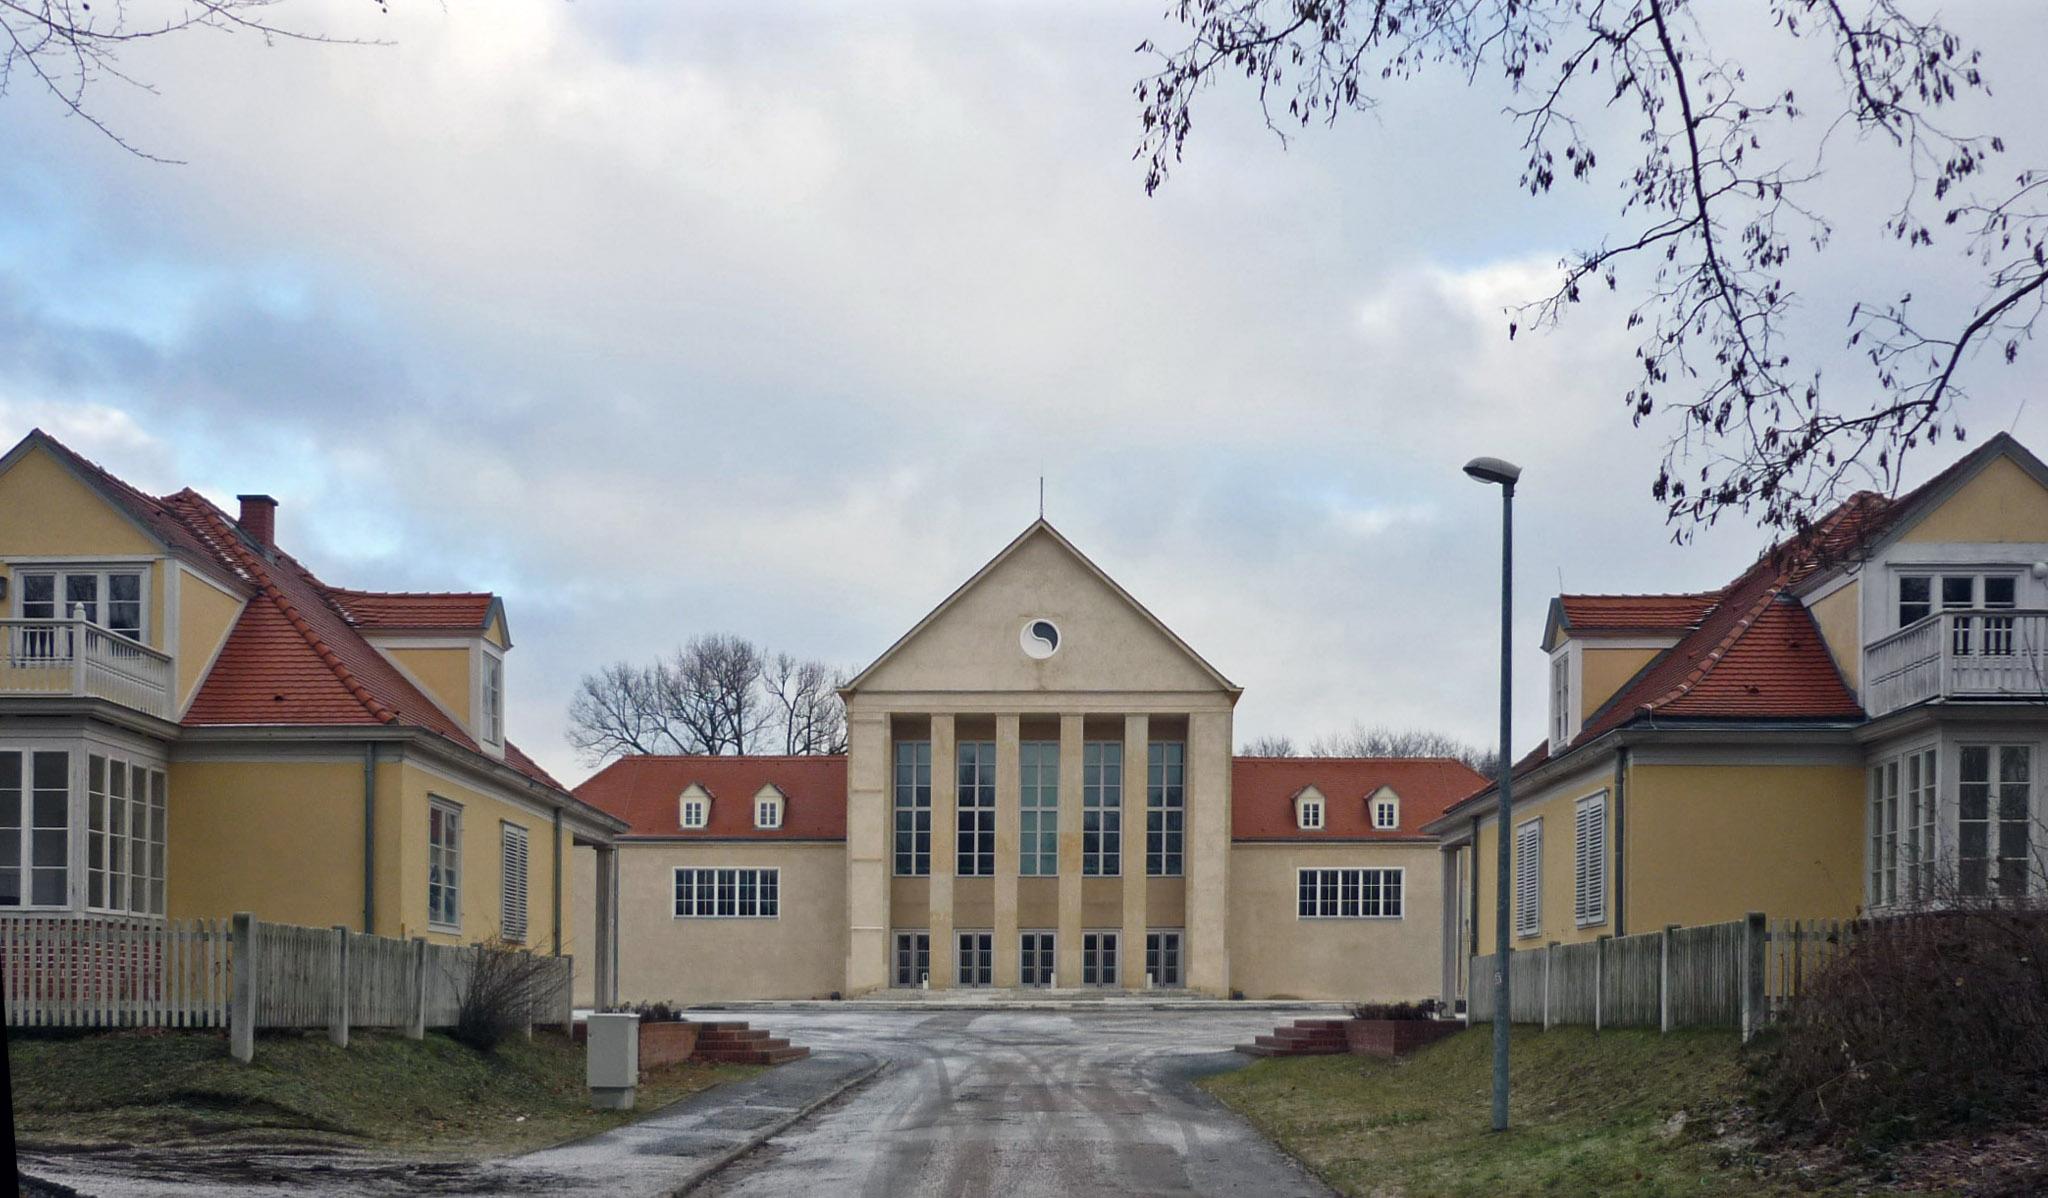 Festspielhaus Hellerau und 2 Pensionshäuser